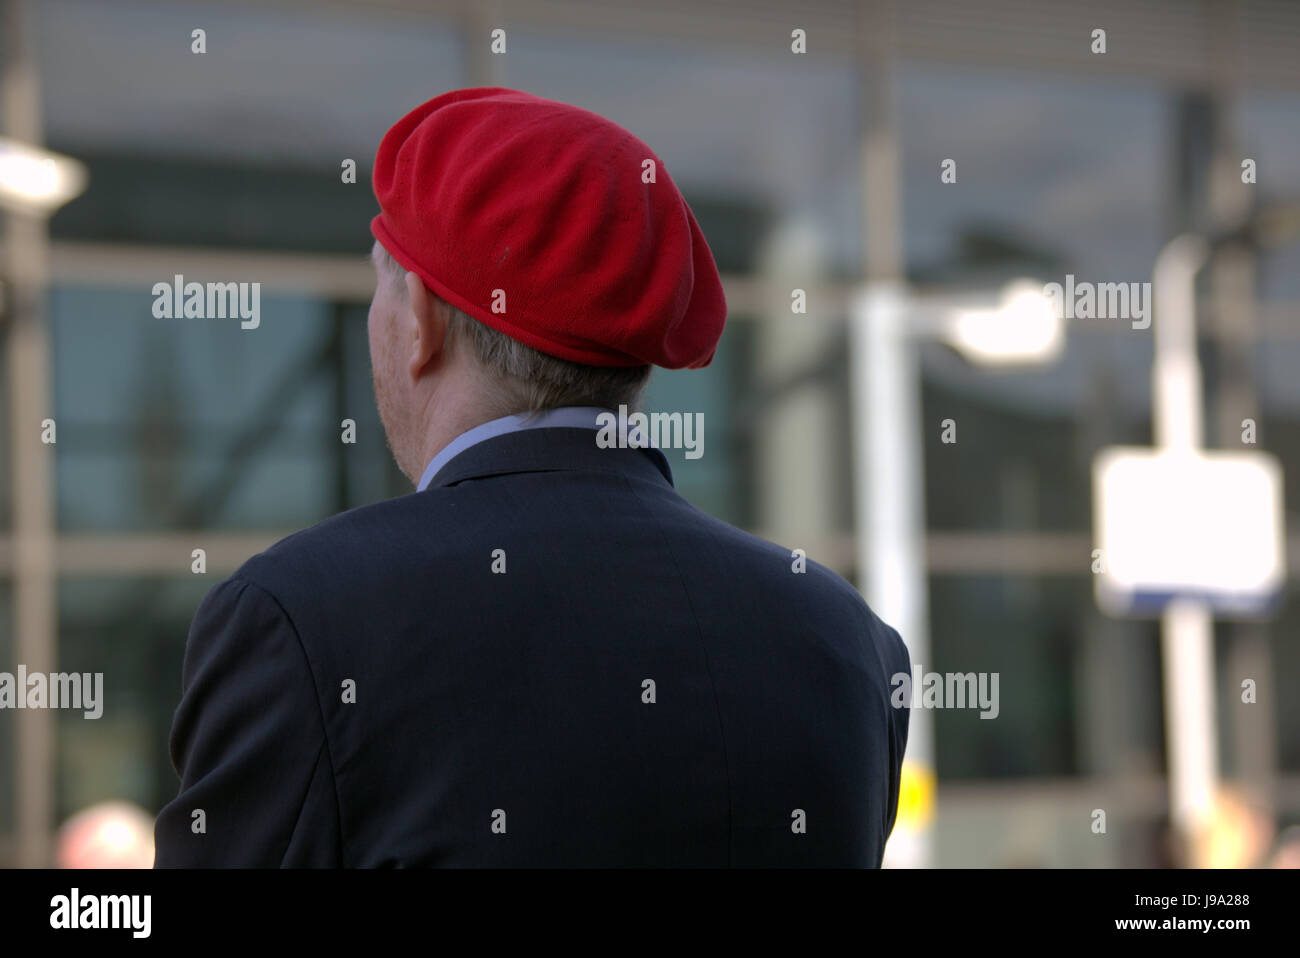 Uomo in una stazione ferroviaria in un berretto rosso sfondo bokeh di fondo al di fuori della messa a fuoco Foto Stock